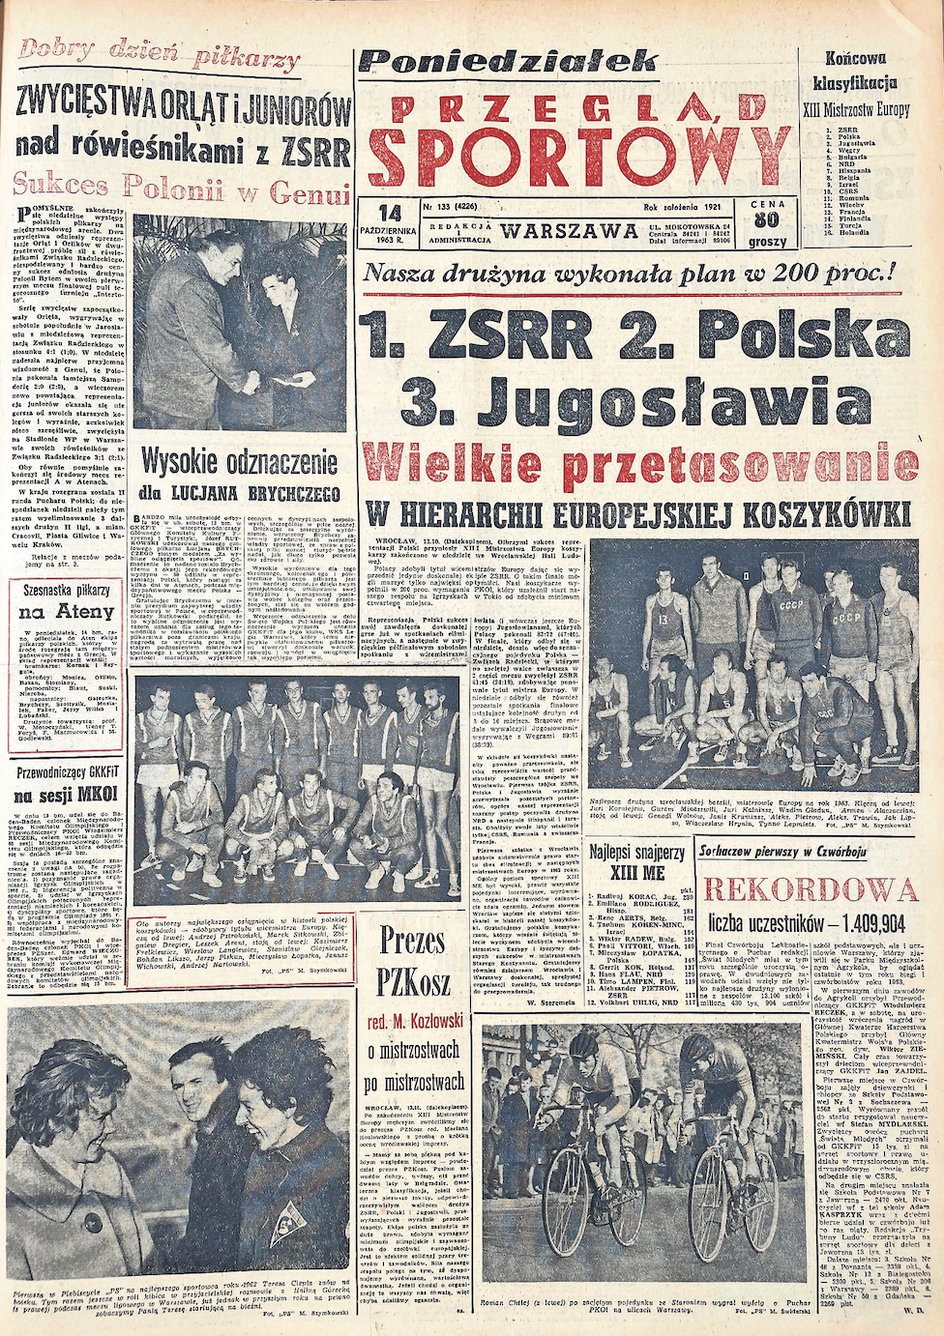 Okładka "PS" z 14 października 1963. Dzień wcześniej reprezentacja sięgnęła po srebro!!!